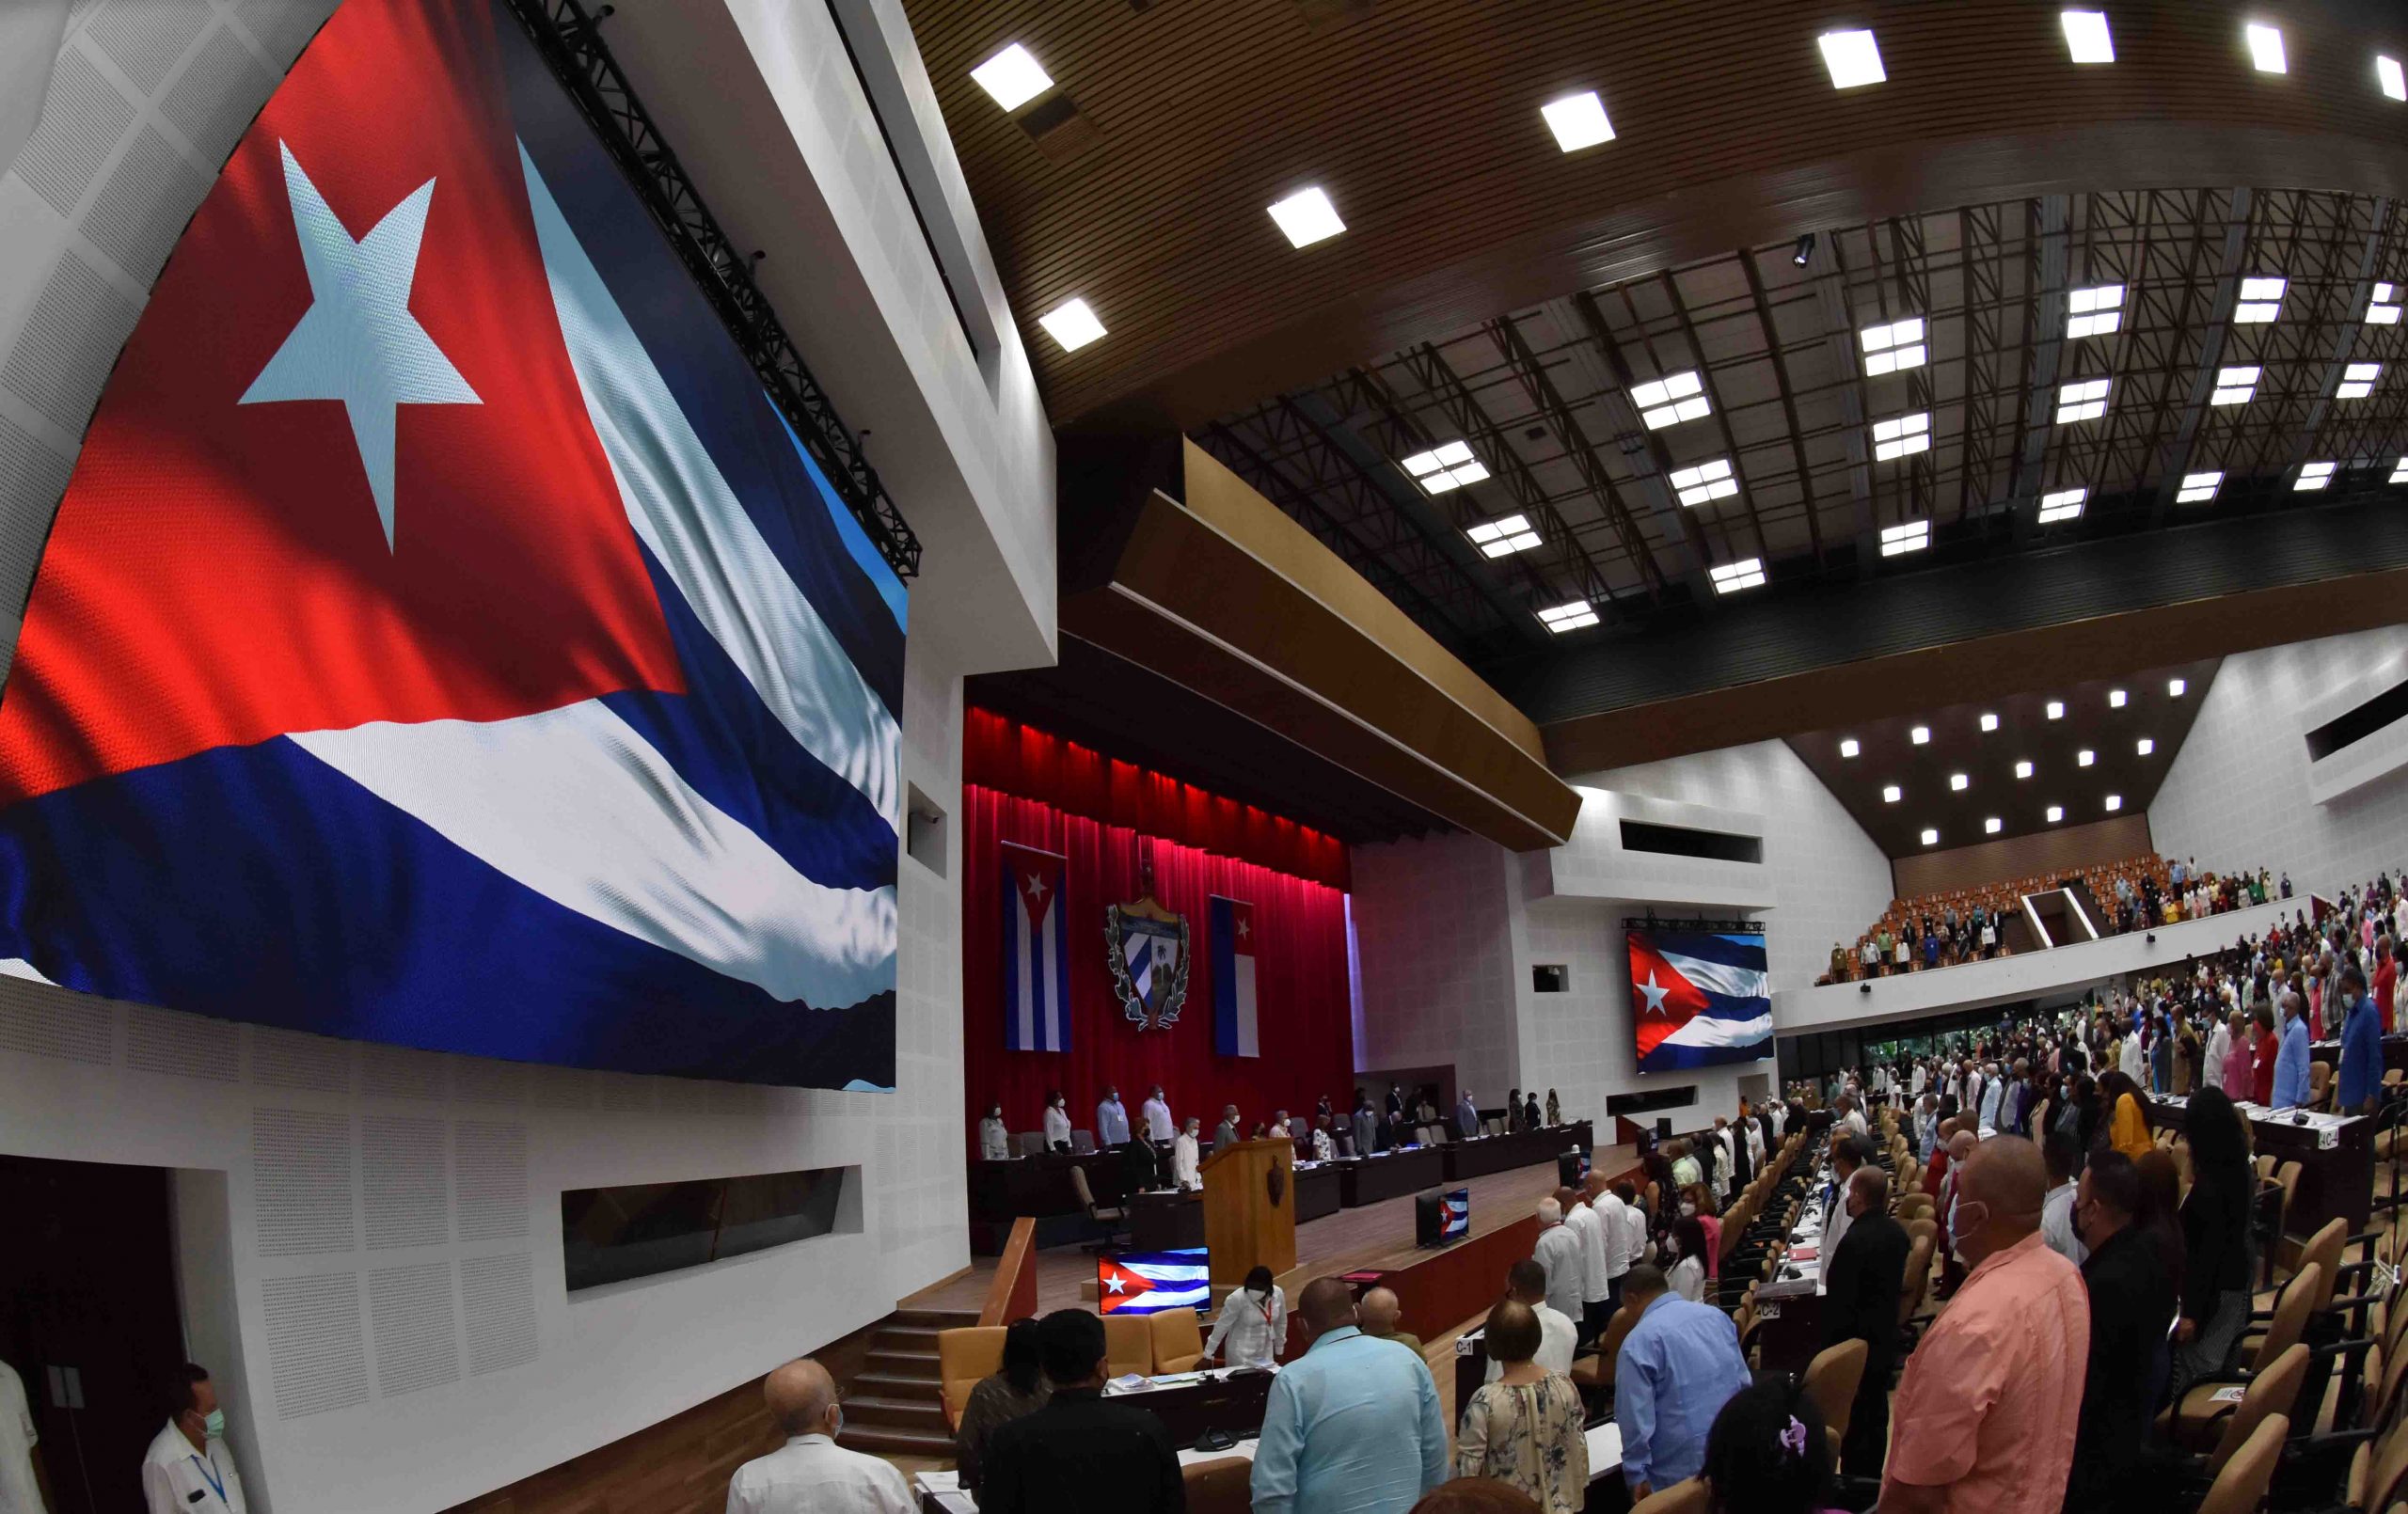 Cuba descrive la sua presunta esclusione dal Vertice delle Americhe come una nuova aggressione americana